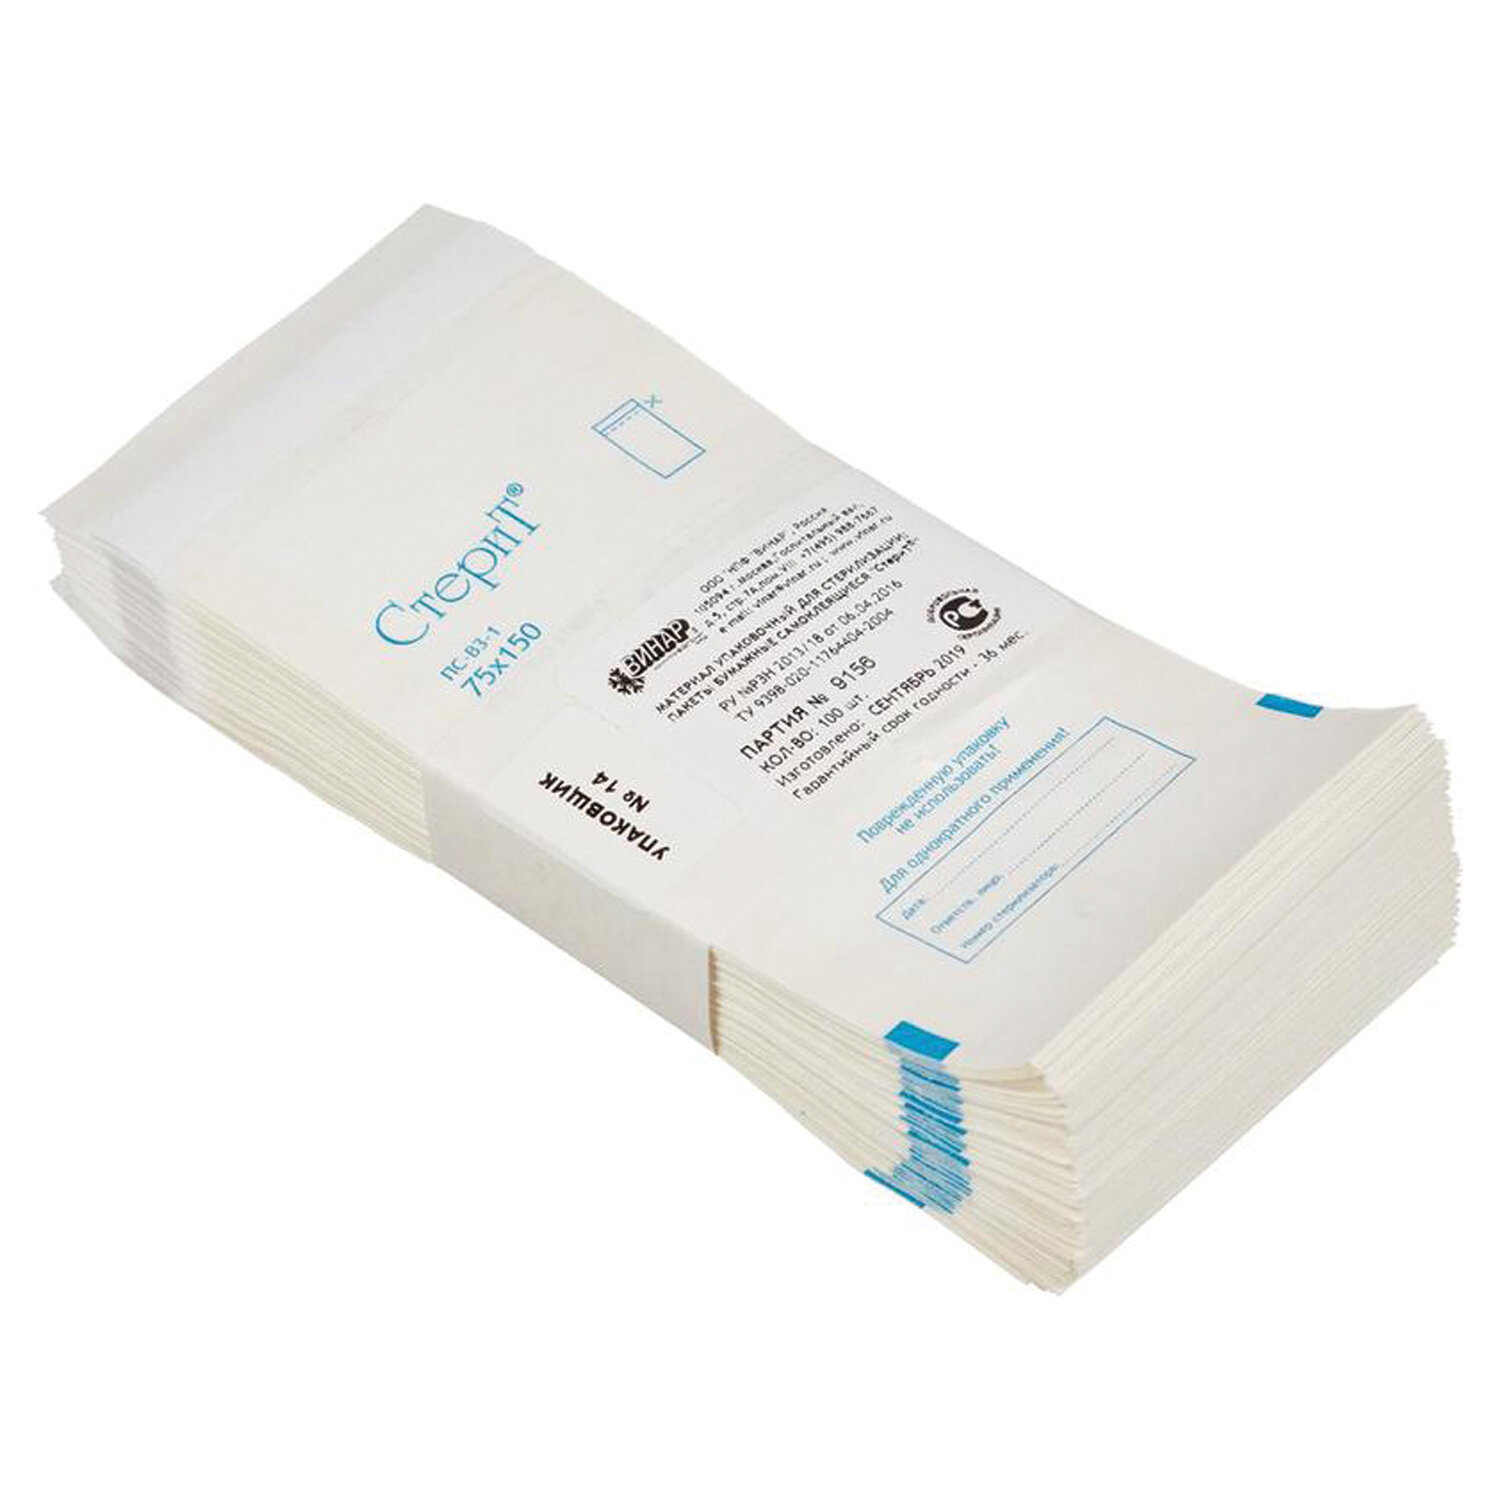 Пакет бумажный самоклеящийся ВИНАР 4 СТЕРИТ, комплект 2 упаковки по 100 шт., для паровой, воздушной стерилизации, 75х150 мм